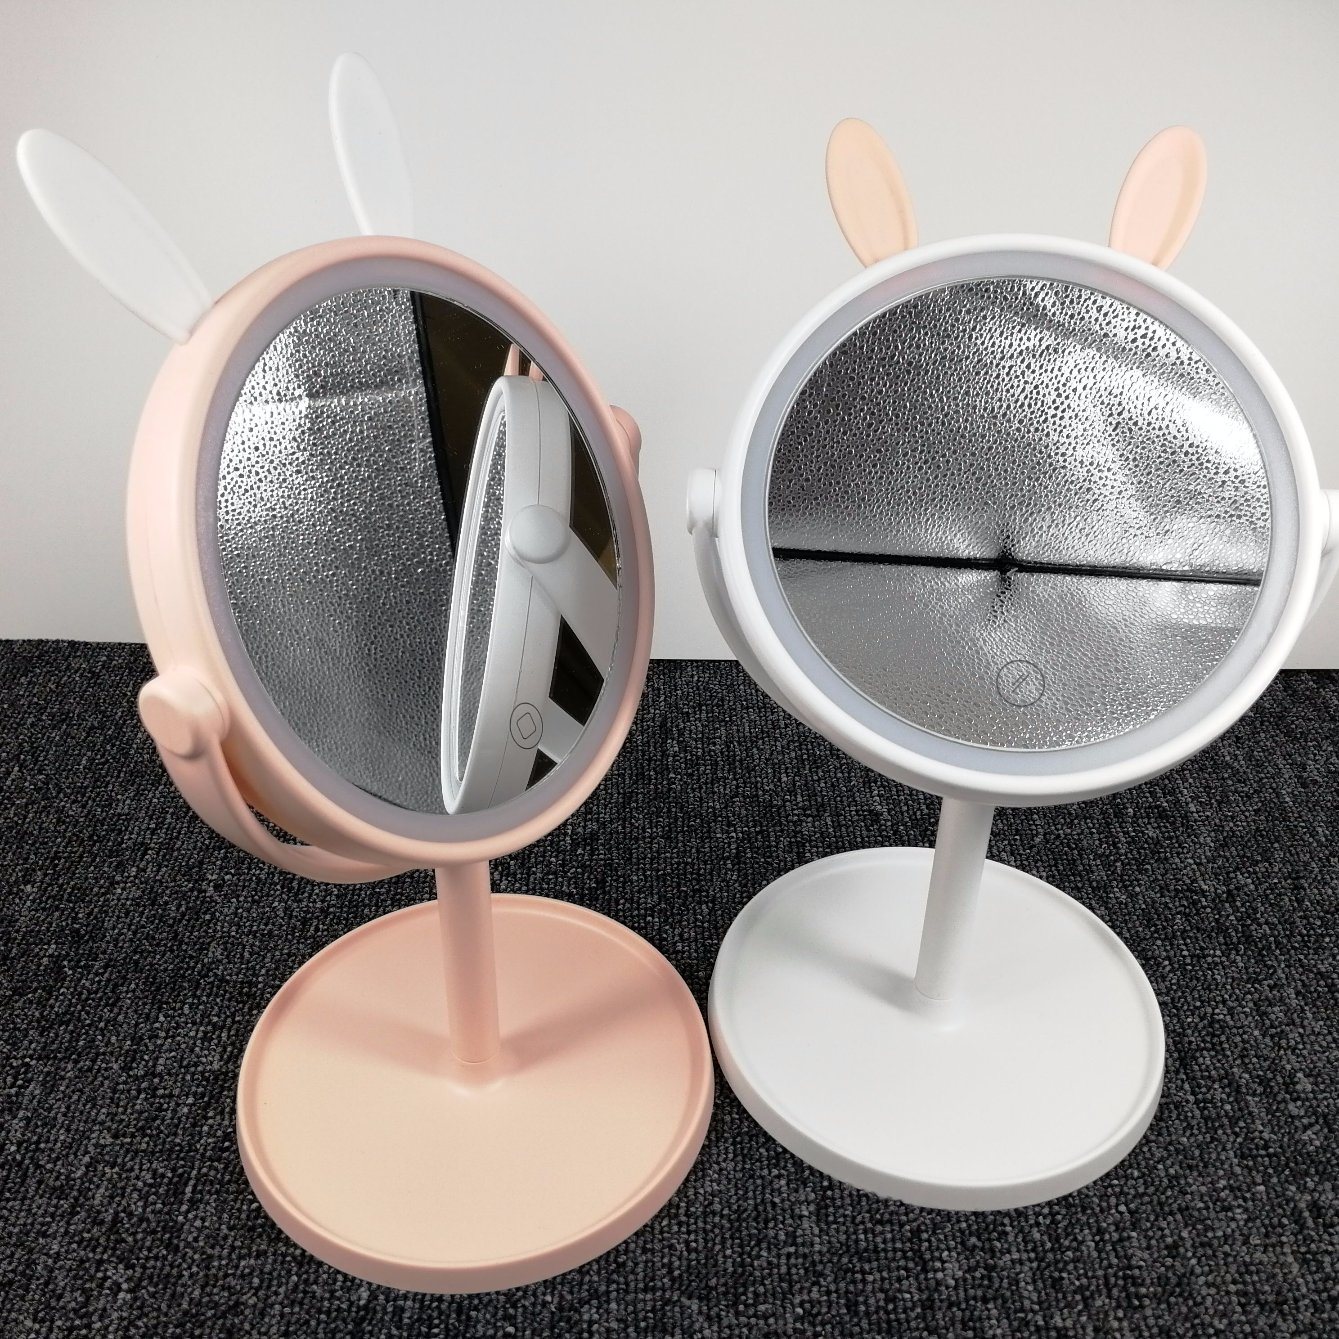 Зеркало для настольных ПК Rabbit Custom LED Cosmetics Mirror